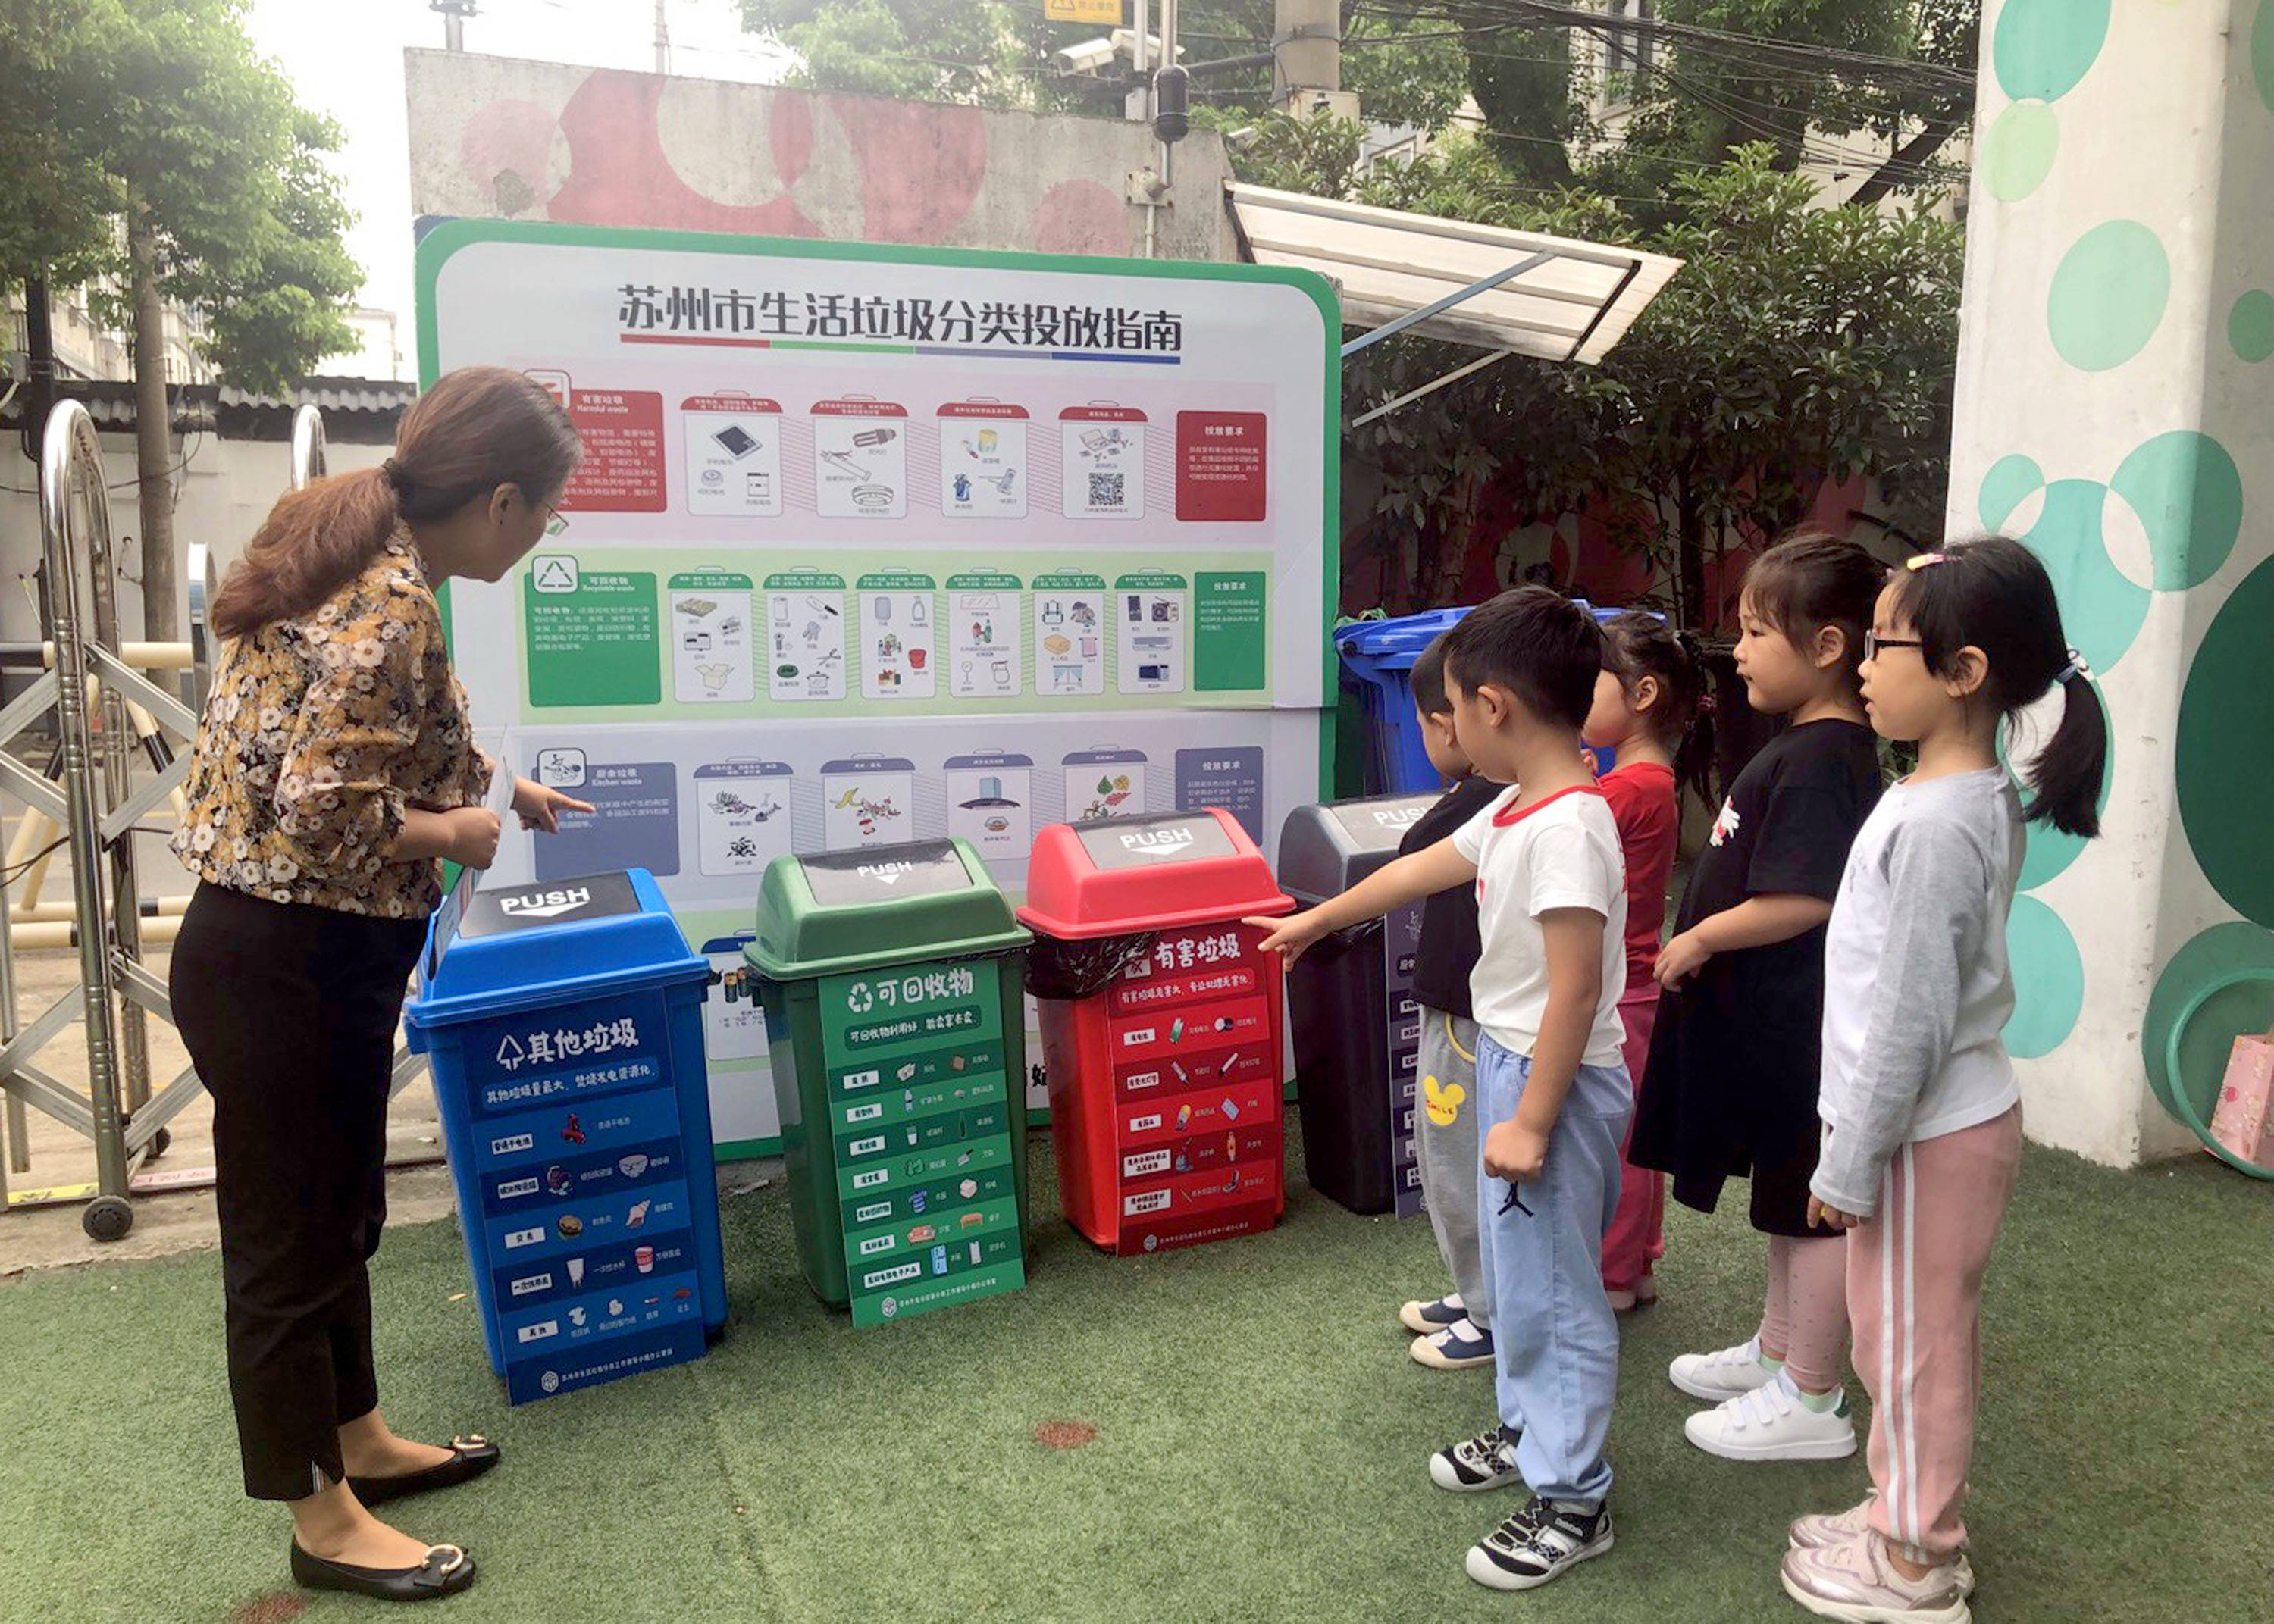 苏州姑苏区葑门中心幼儿园开展"垃圾分类从我做起 争做环保小卫士"